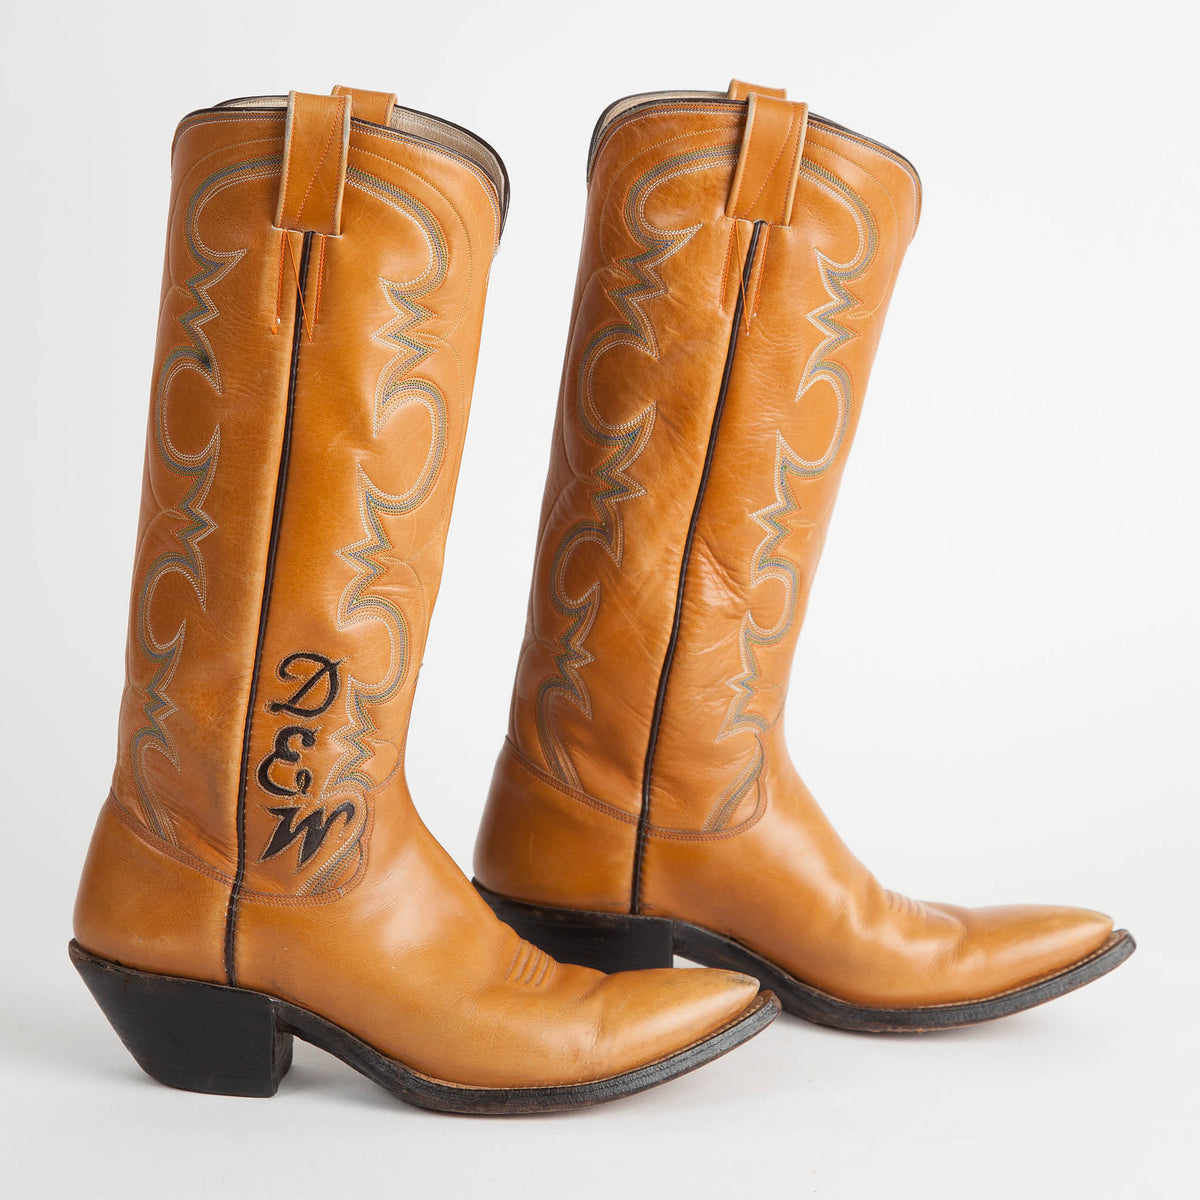 tan cowboy boots